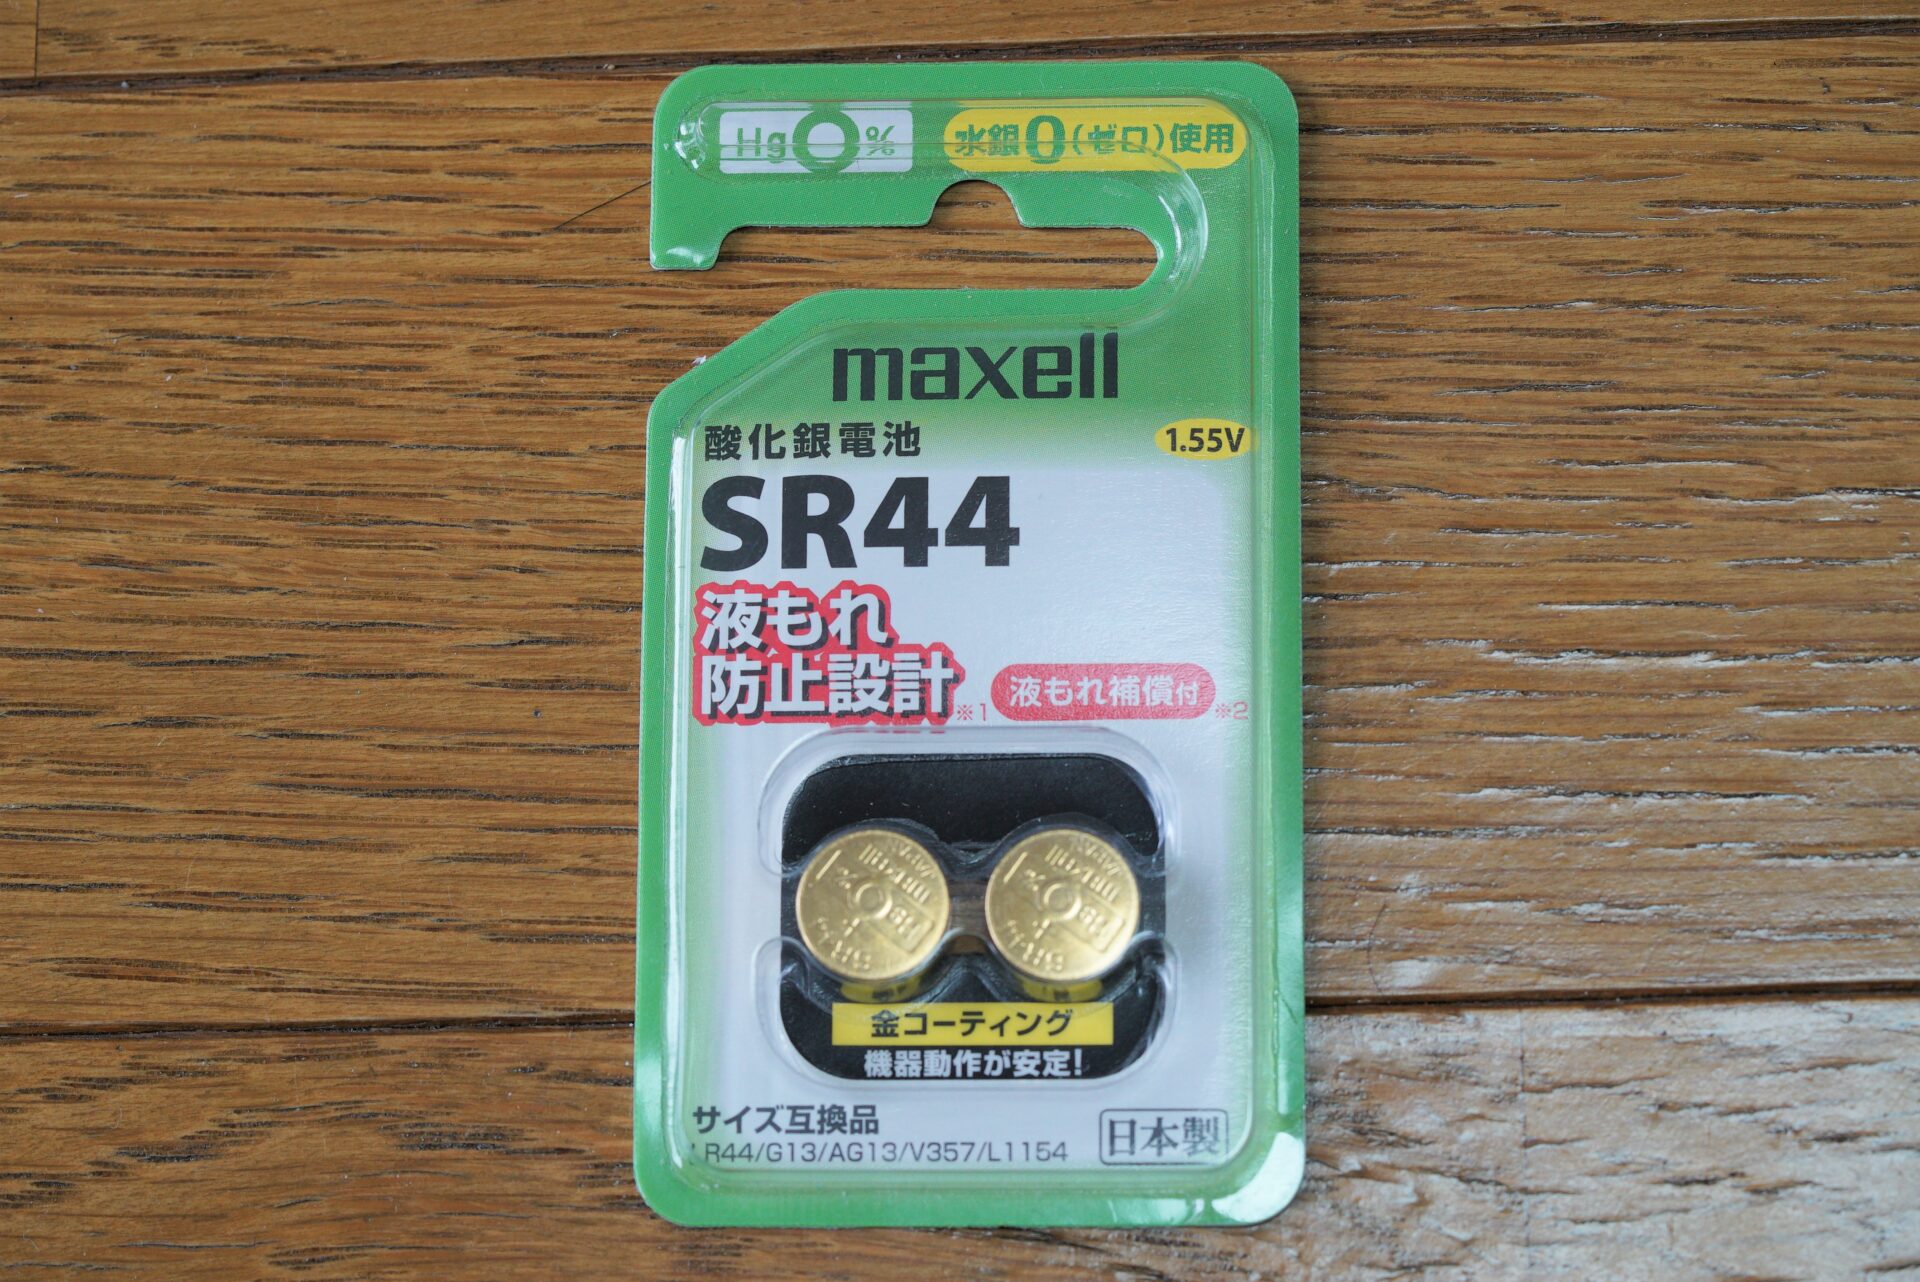 ボタン電池SR44のパッケージと実物写真